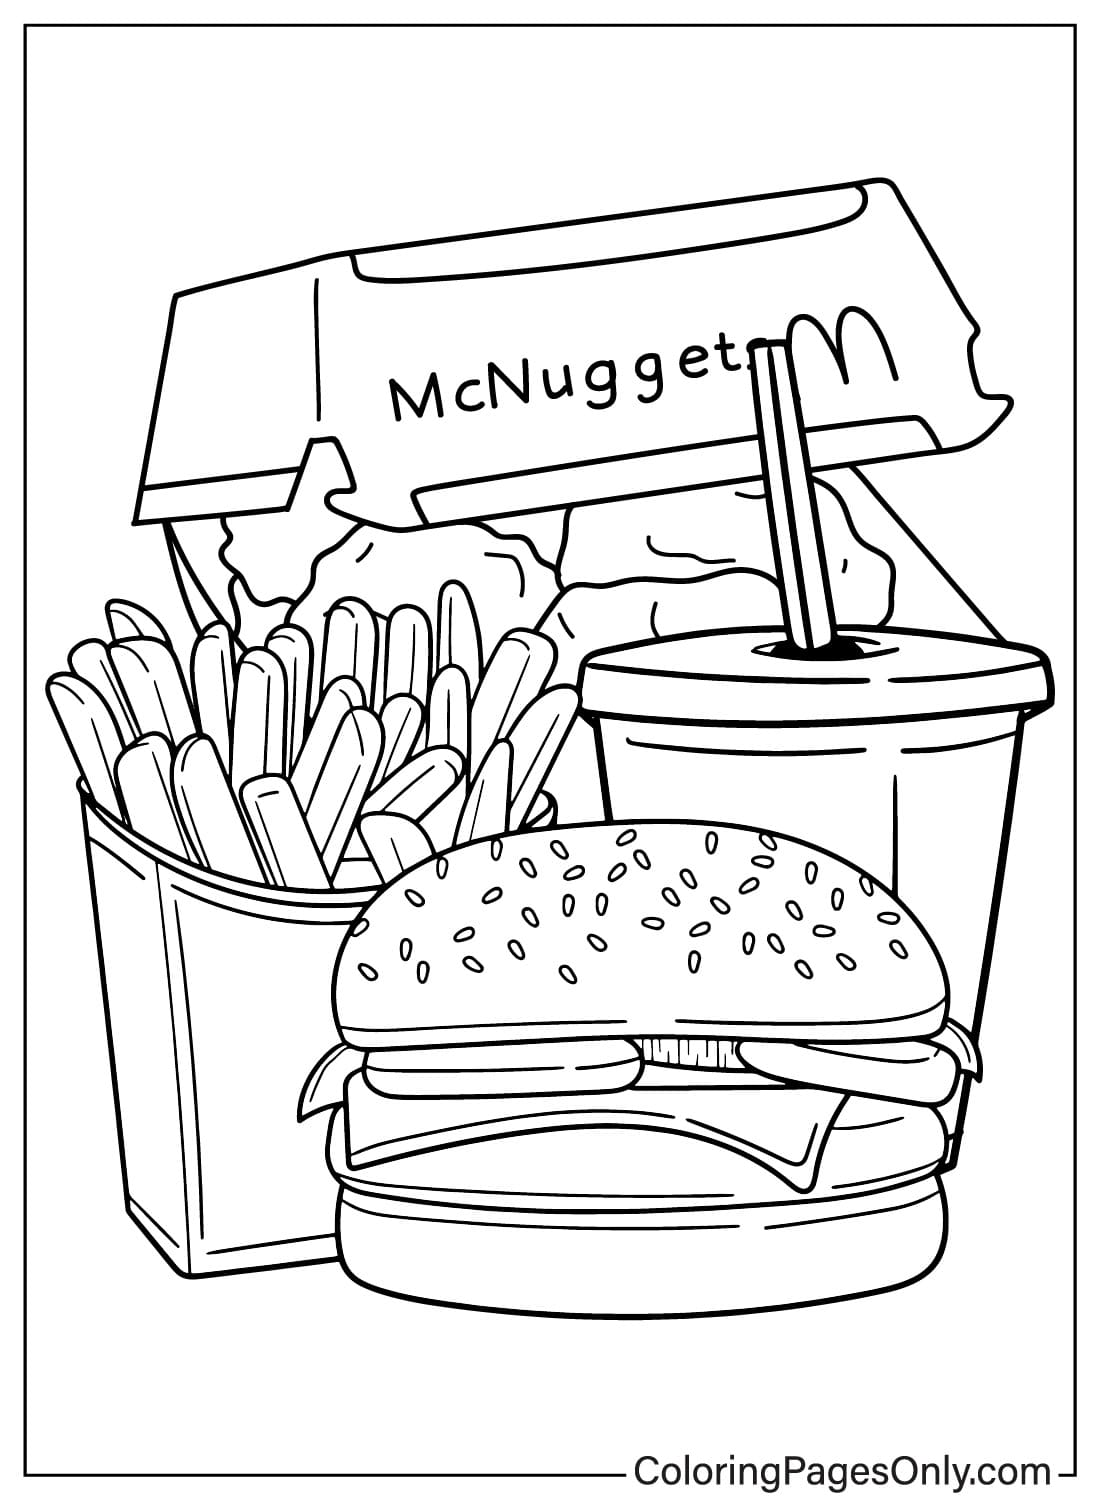 Página para colorir grátis do McDonalds no McDonald's